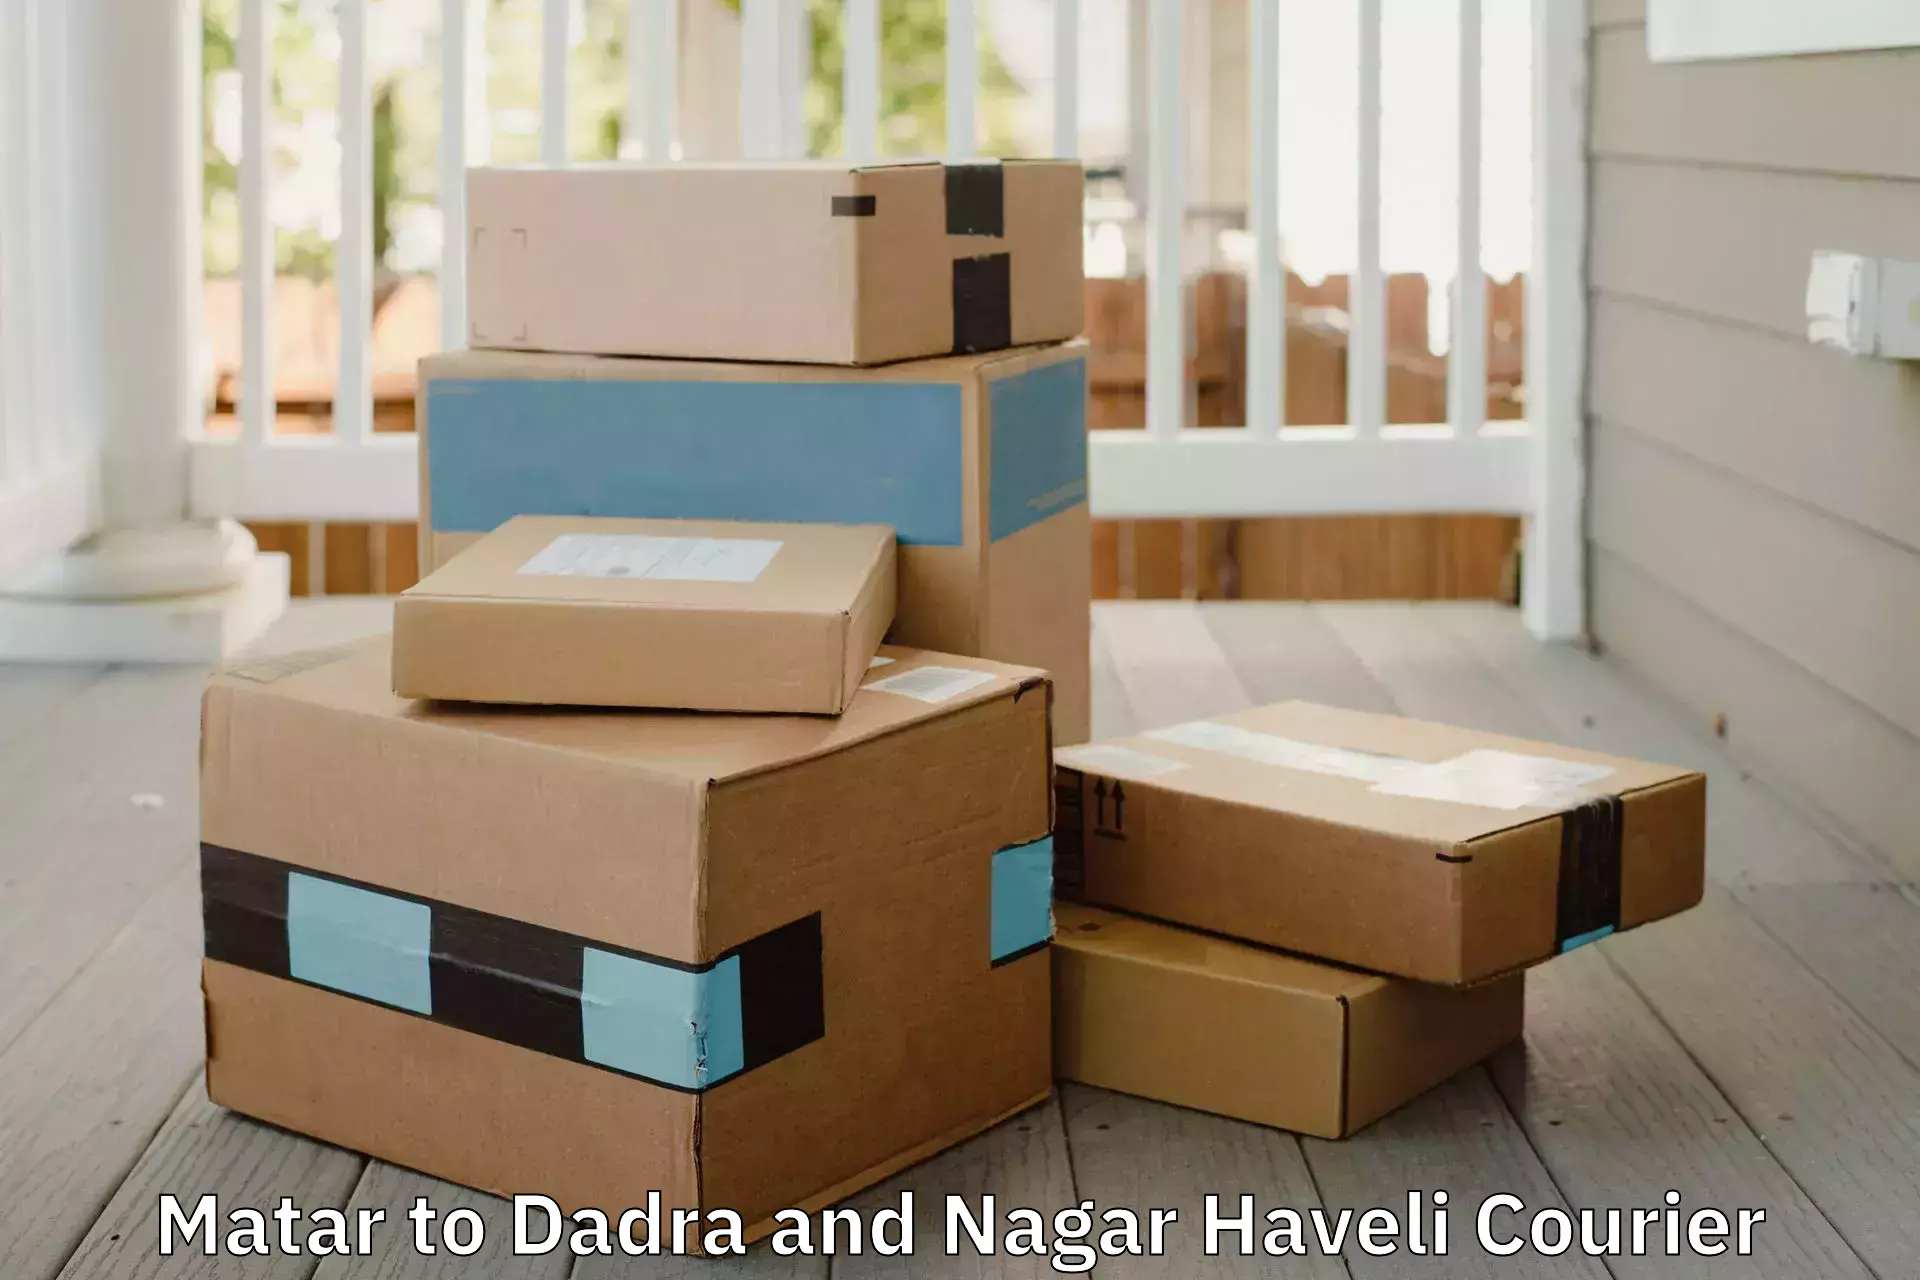 Furniture logistics Matar to Dadra and Nagar Haveli